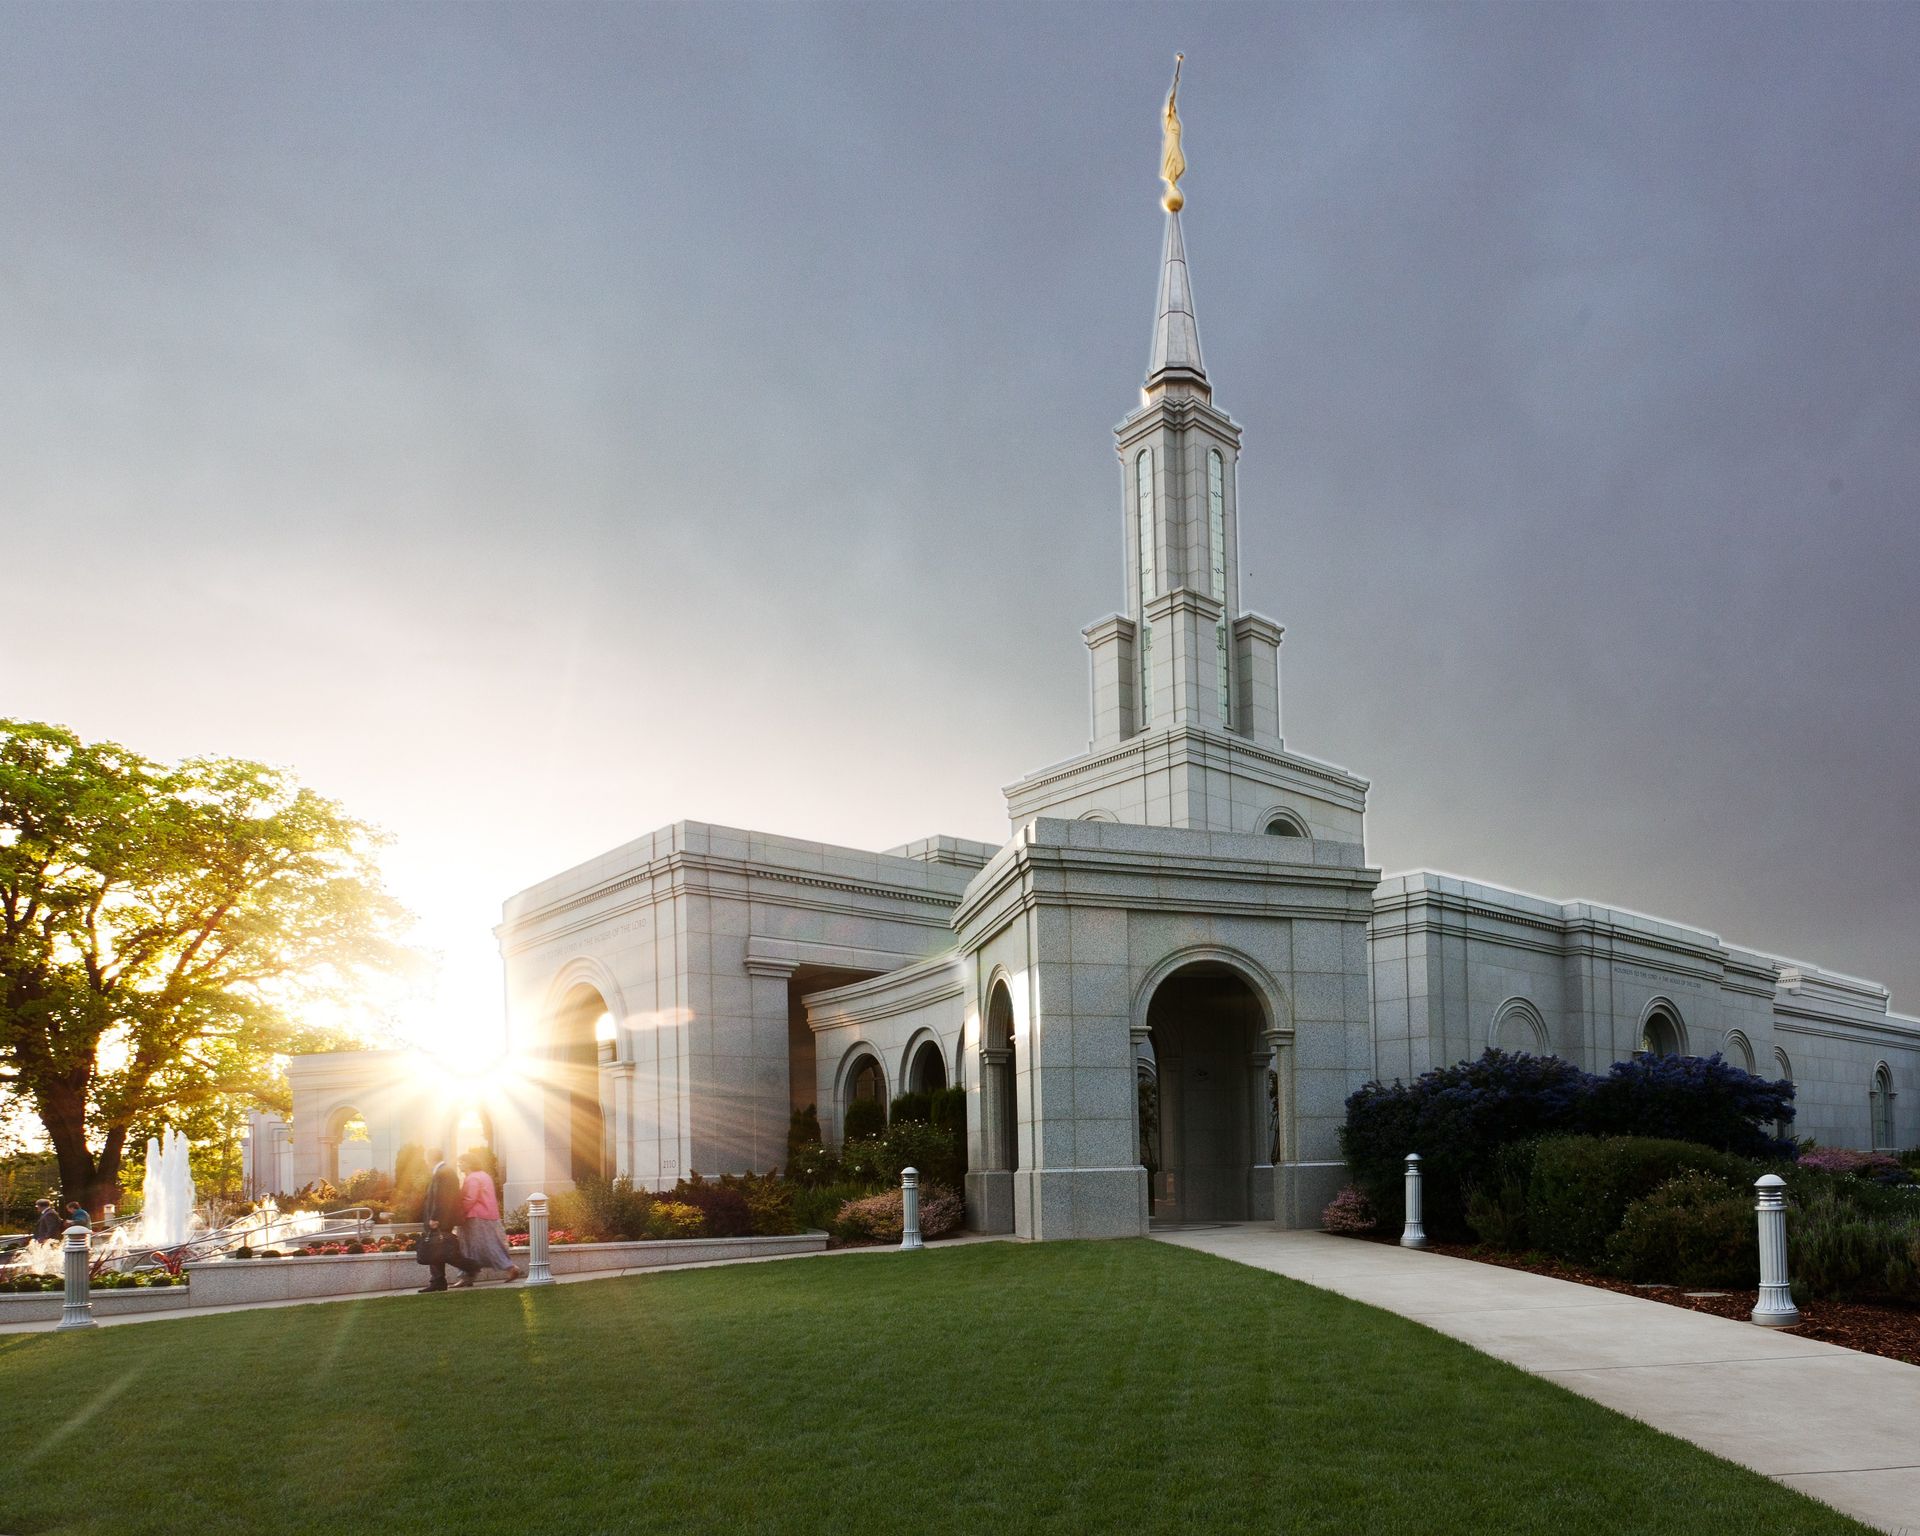 The Sacramento California Temple entrance, including scenery.